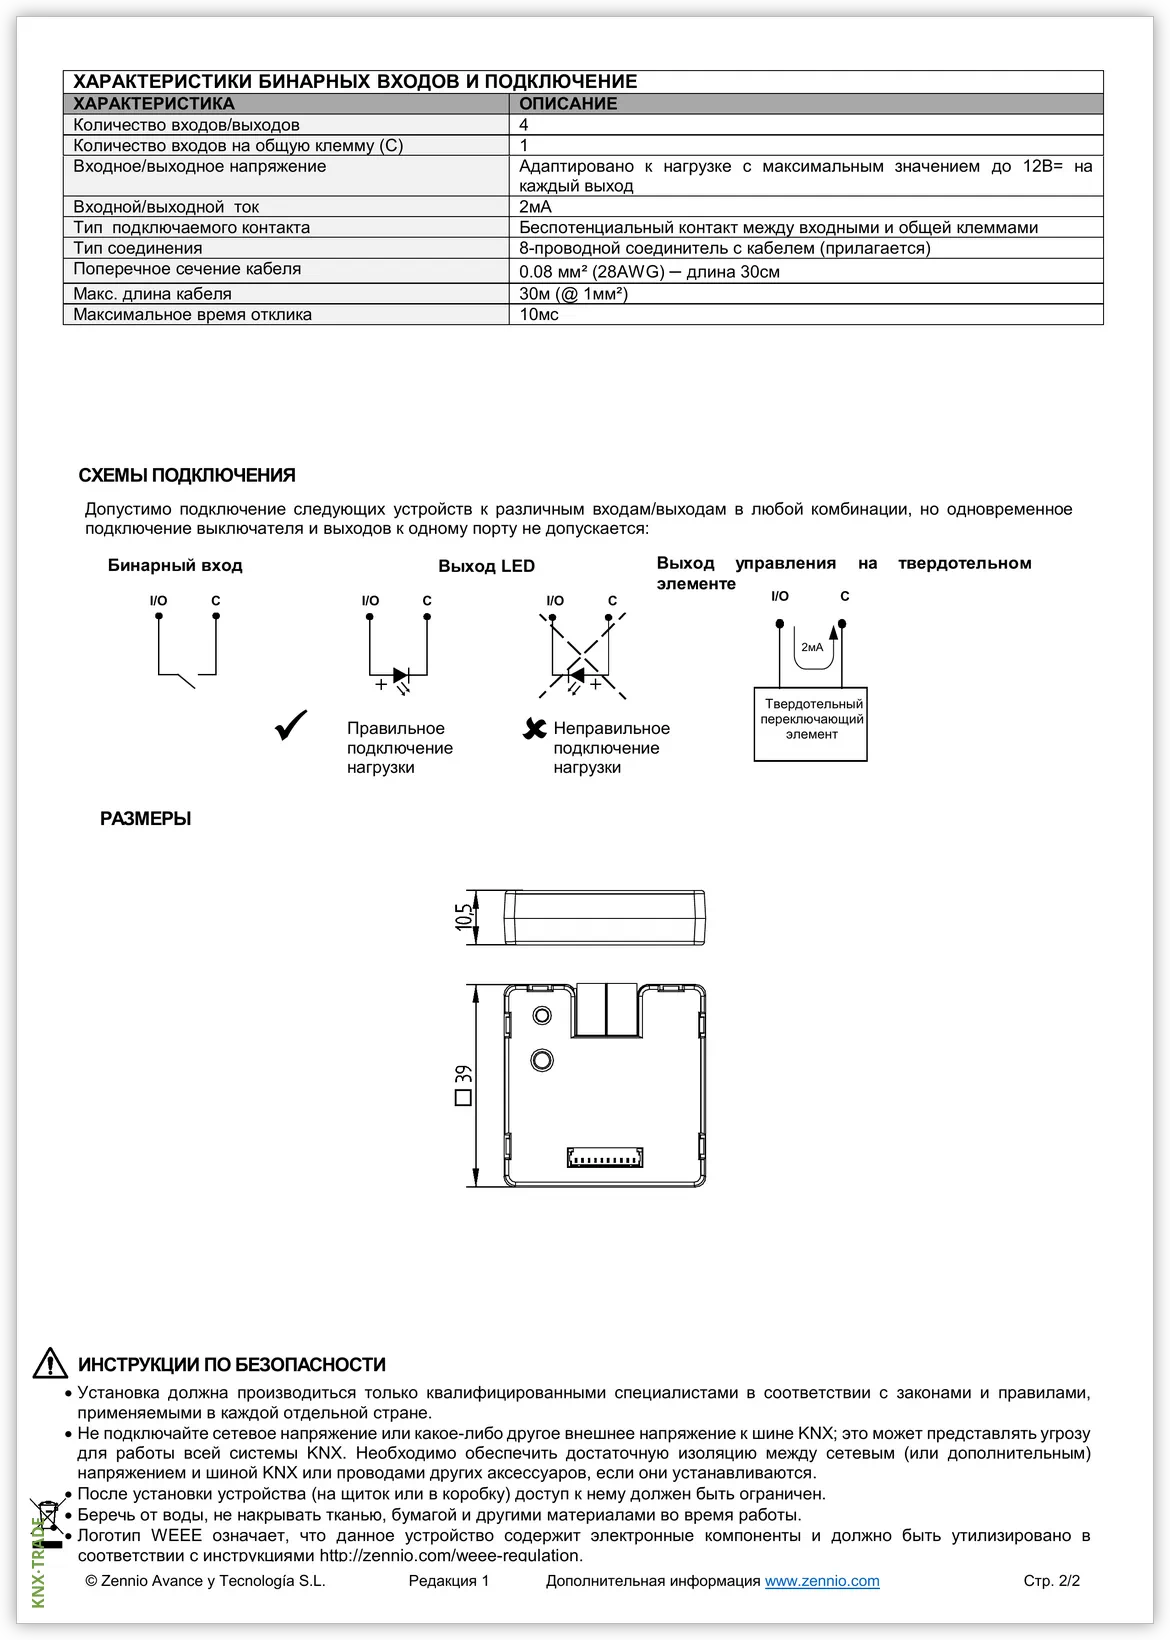 Datasheet (2) Zennio [ZIO-BIN4X] BIN 4X / Модуль KNX универсальный, 4 дискретных входа или 4 выхода контроля LED